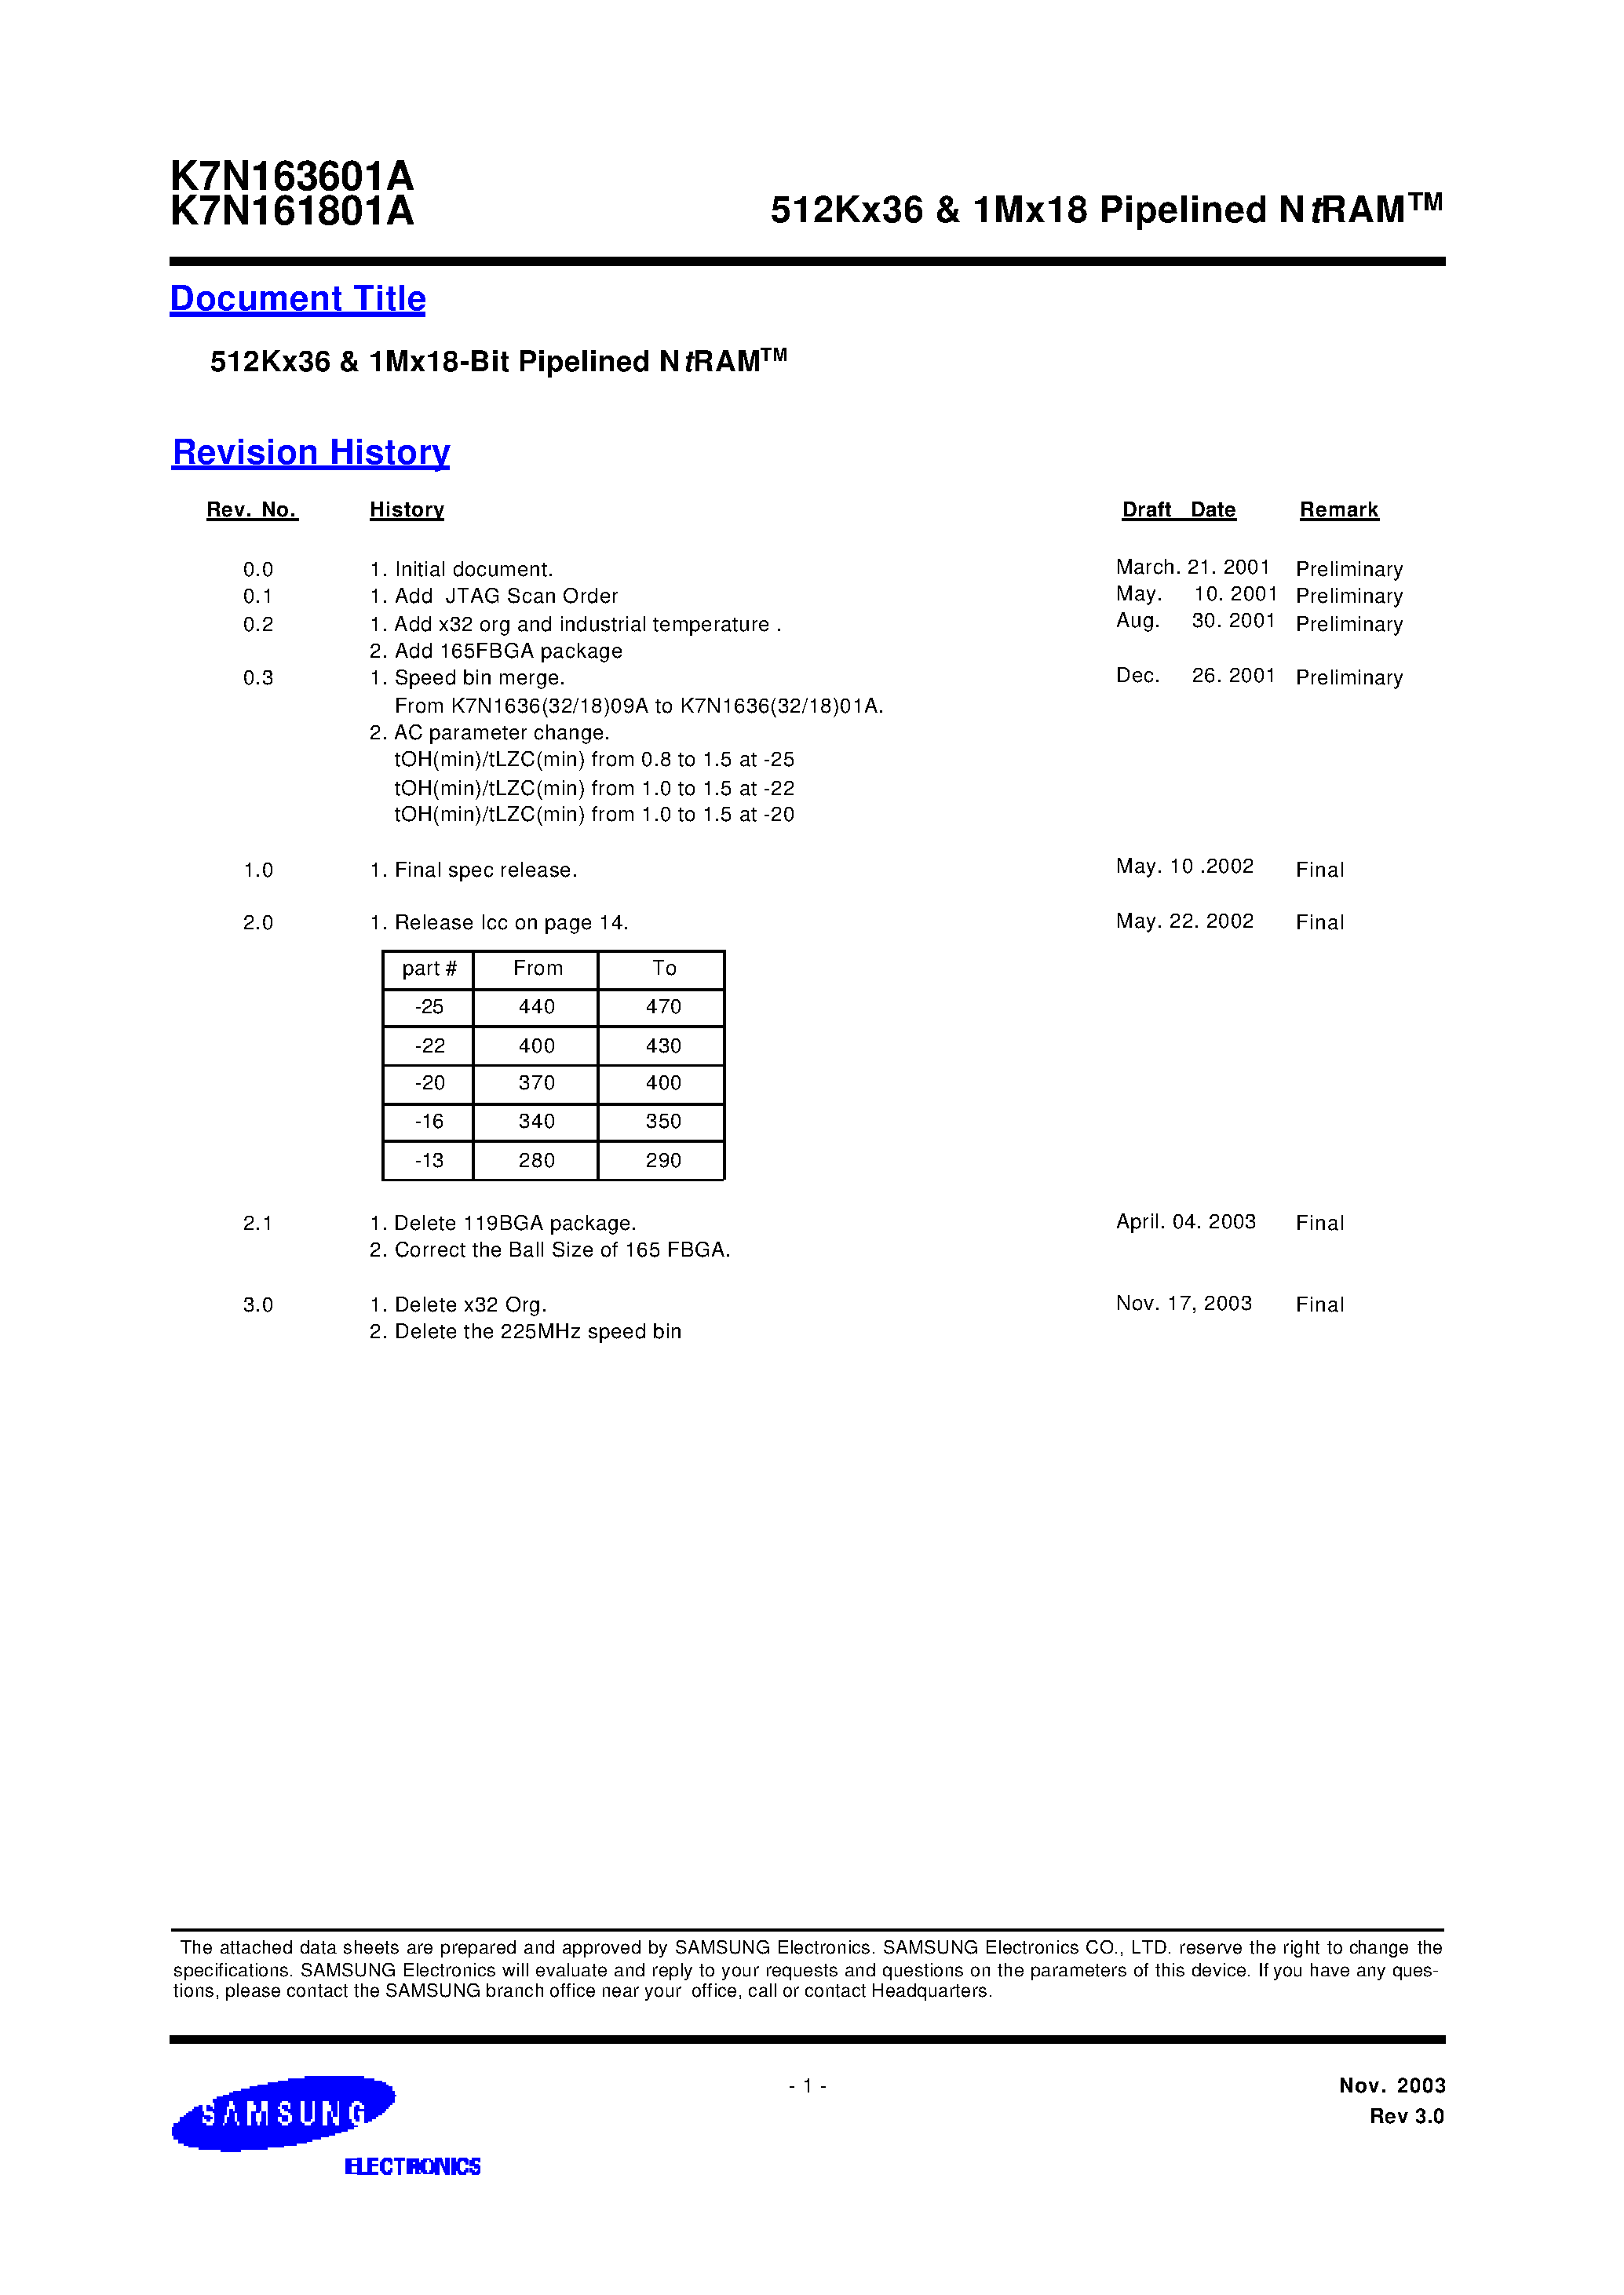 Даташит K7N163601A-Q(F)C(I)20 - 512Kx36 & 1Mx18 Pipelined NtRAM страница 1